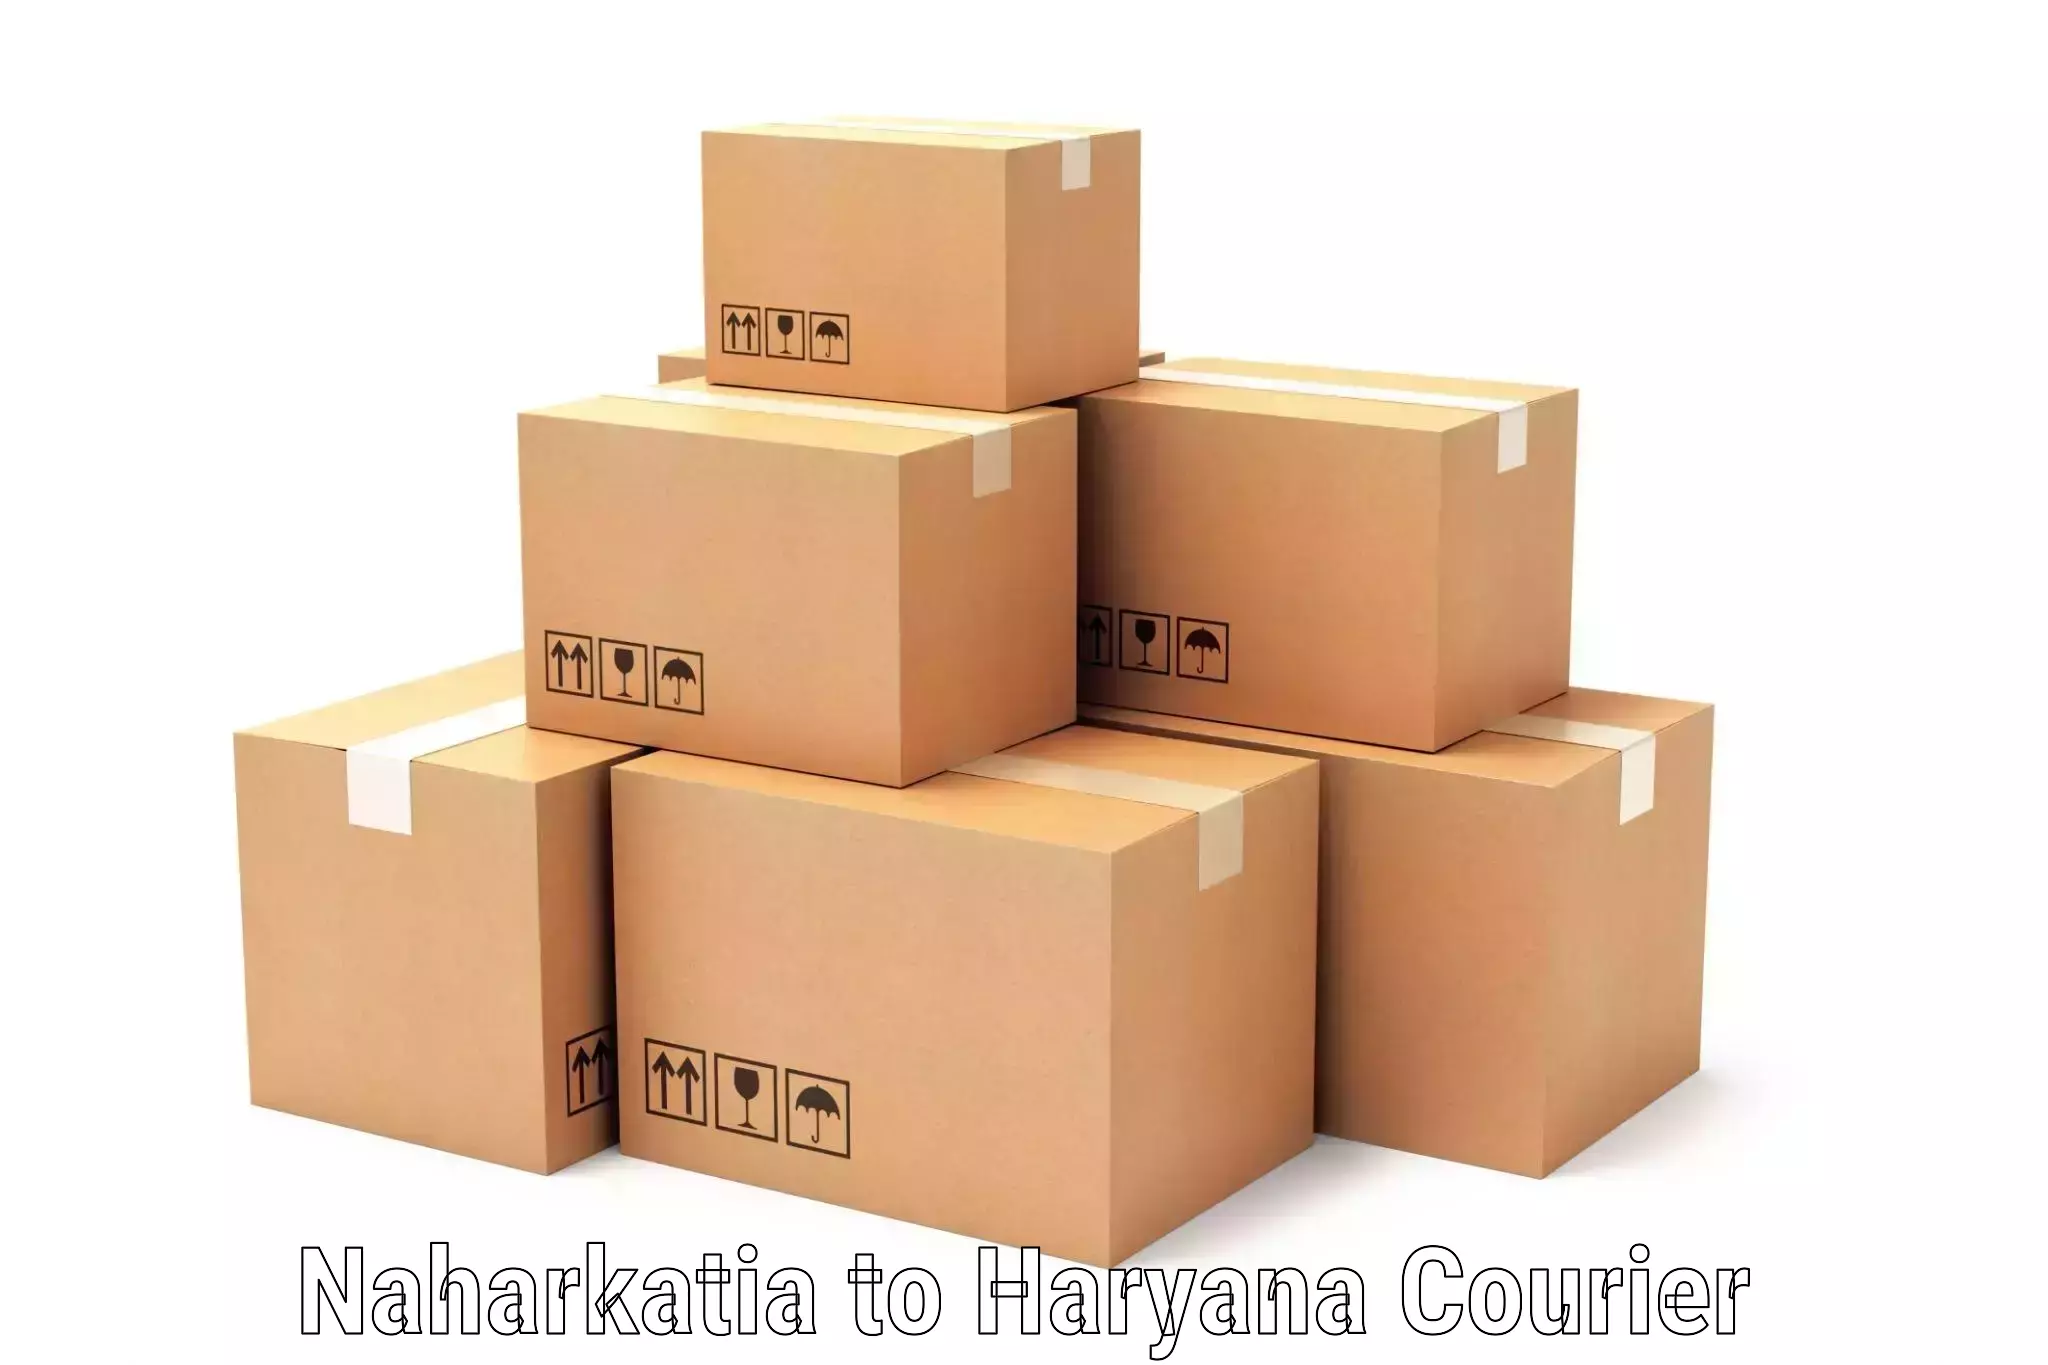 Small parcel delivery in Naharkatia to Kurukshetra